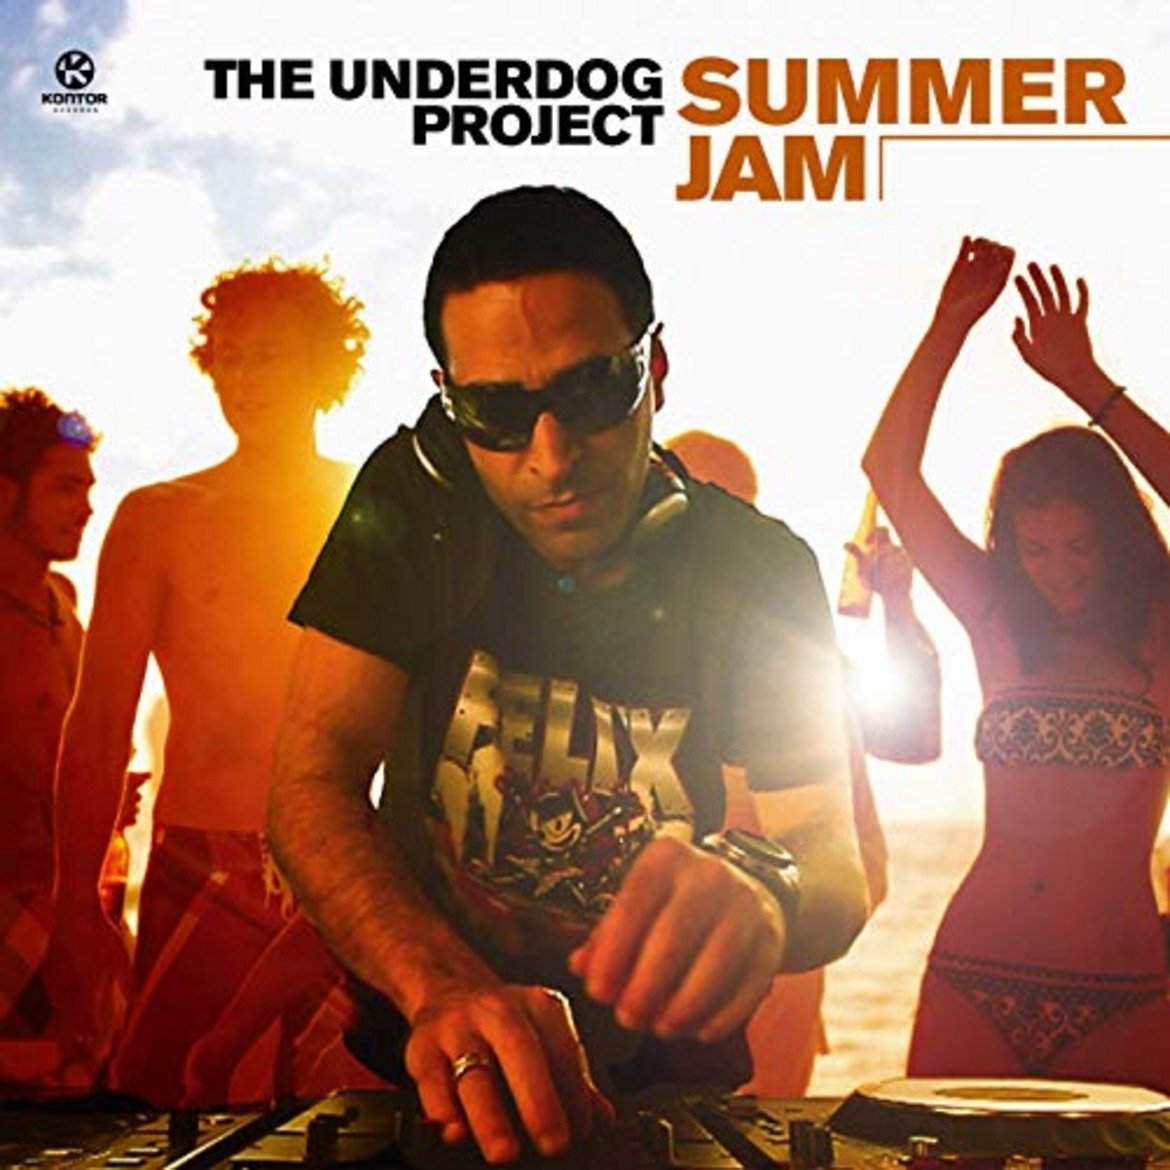 The Underdog Project - Summer Jam
Има ли по типичен летен хит за този момент от човешката история? В Summer Jam ги има всички тези усещания от евроденс до това, което впоследствие ще се превърне в поп-хаус. А също така има бял пясък, синьо море и красиви хора по бански. Идеален спомен за лятото, особено в началото на януари.